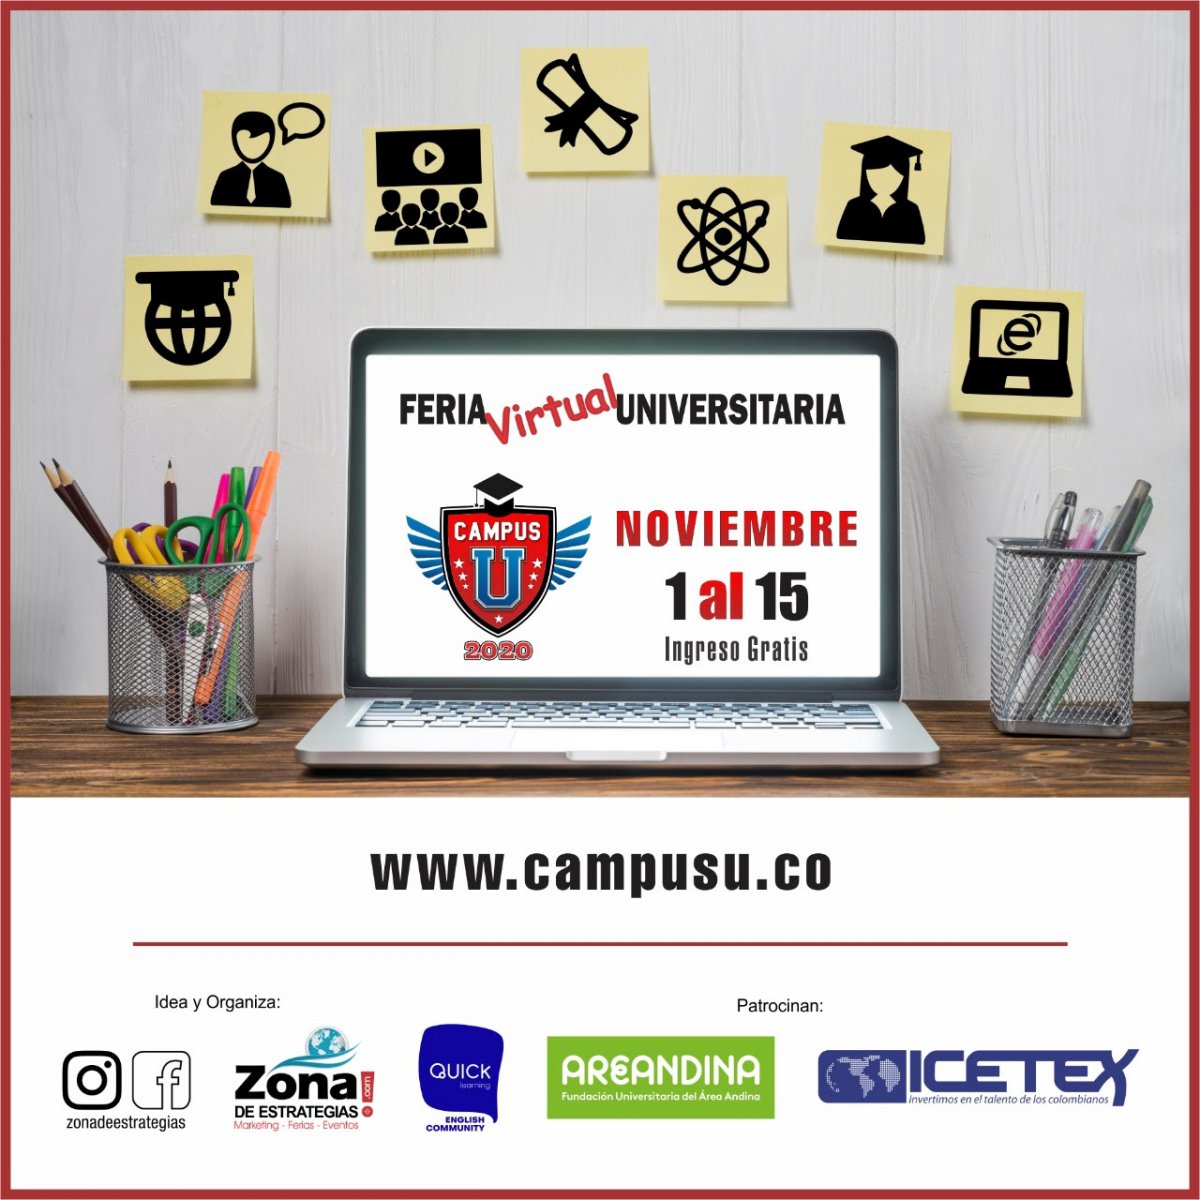 Feria_Virtual_Universitaria_Campus_U_2020.jpg